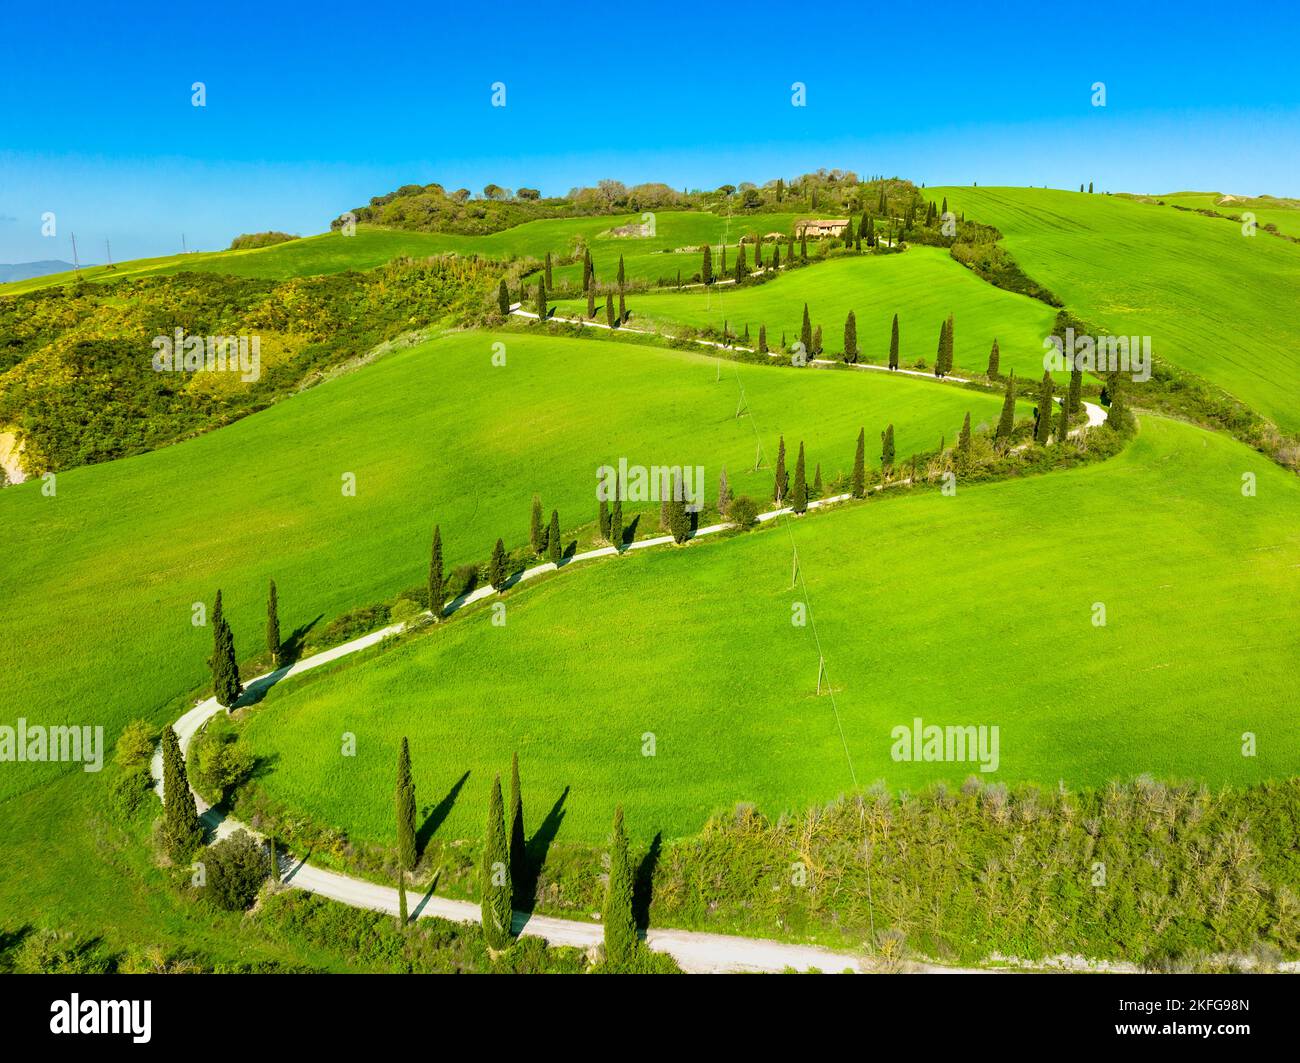 Vista de planta de una carretera sinuosa con cipreses en la campiña toscana. Chianciano, Provincia de Siena, Italia Foto de stock